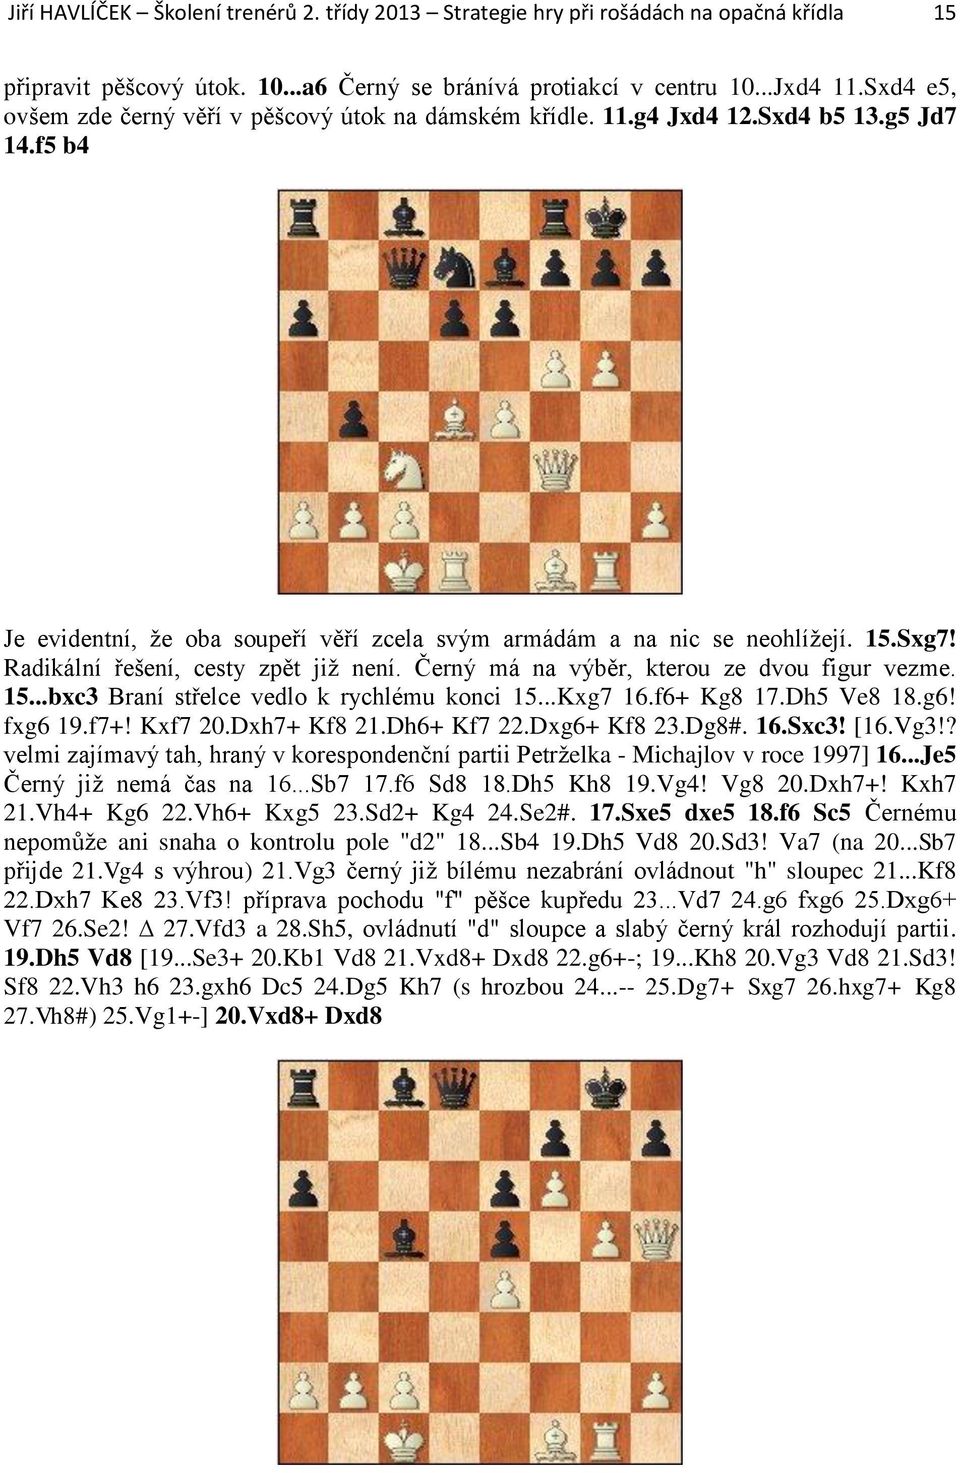 Radikální řešení, cesty zpět již není. Černý má na výběr, kterou ze dvou figur vezme. 15...bxc3 Braní střelce vedlo k rychlému konci 15...Kxg7 16.f6+ Kg8 17.Dh5 Ve8 18.g6! fxg6 19.f7+! Kxf7 20.